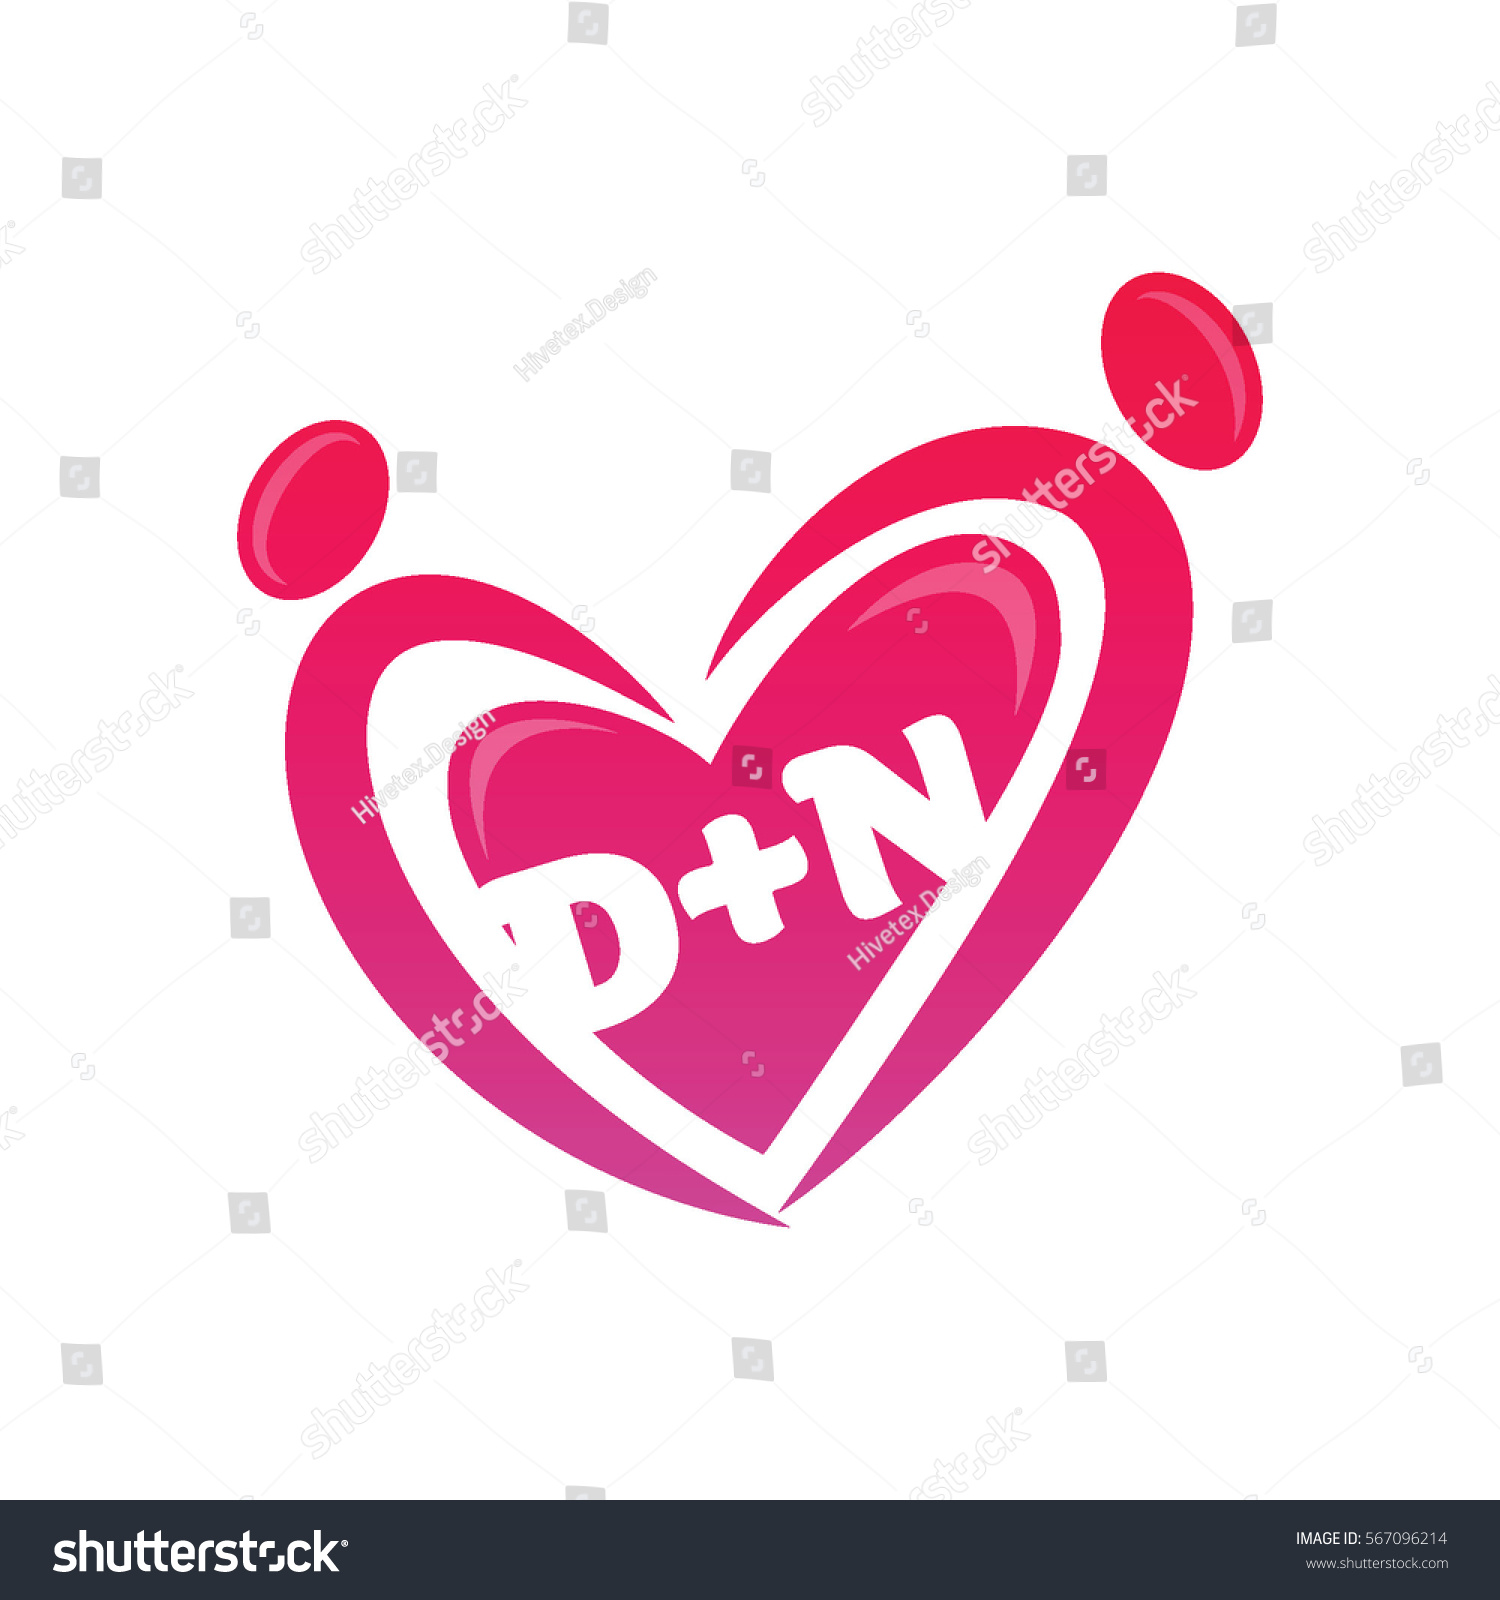 Dn Logo Stock Vector Royalty Free 567096214